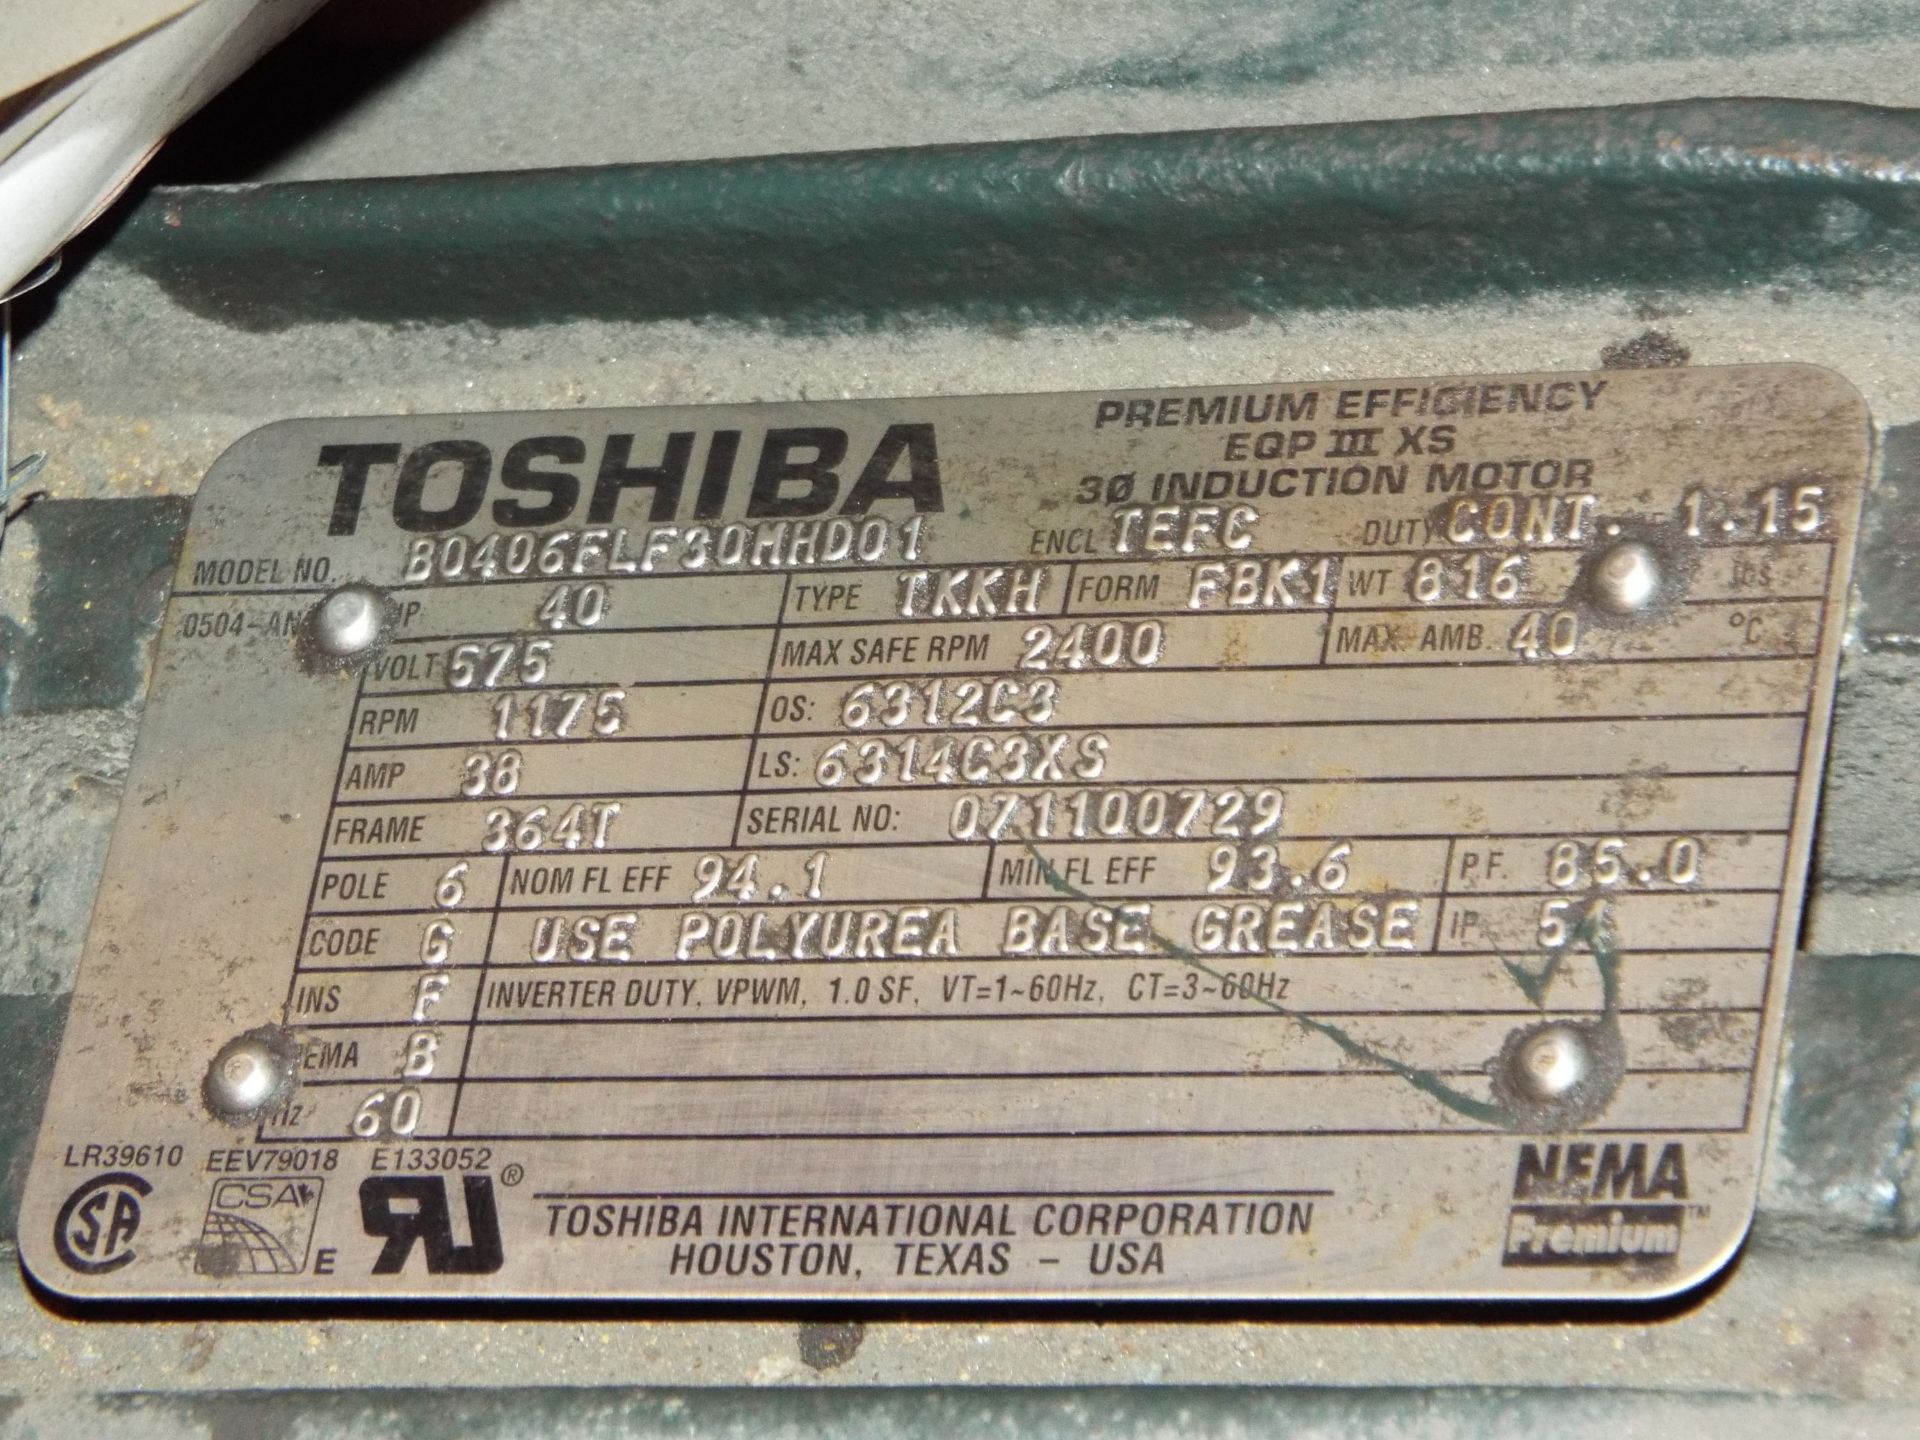 TOSHIBA 40 HP, 575V, 38 AMP, 1175 RPM, 3-PHASE INDUCTION MOTOR - Image 2 of 2